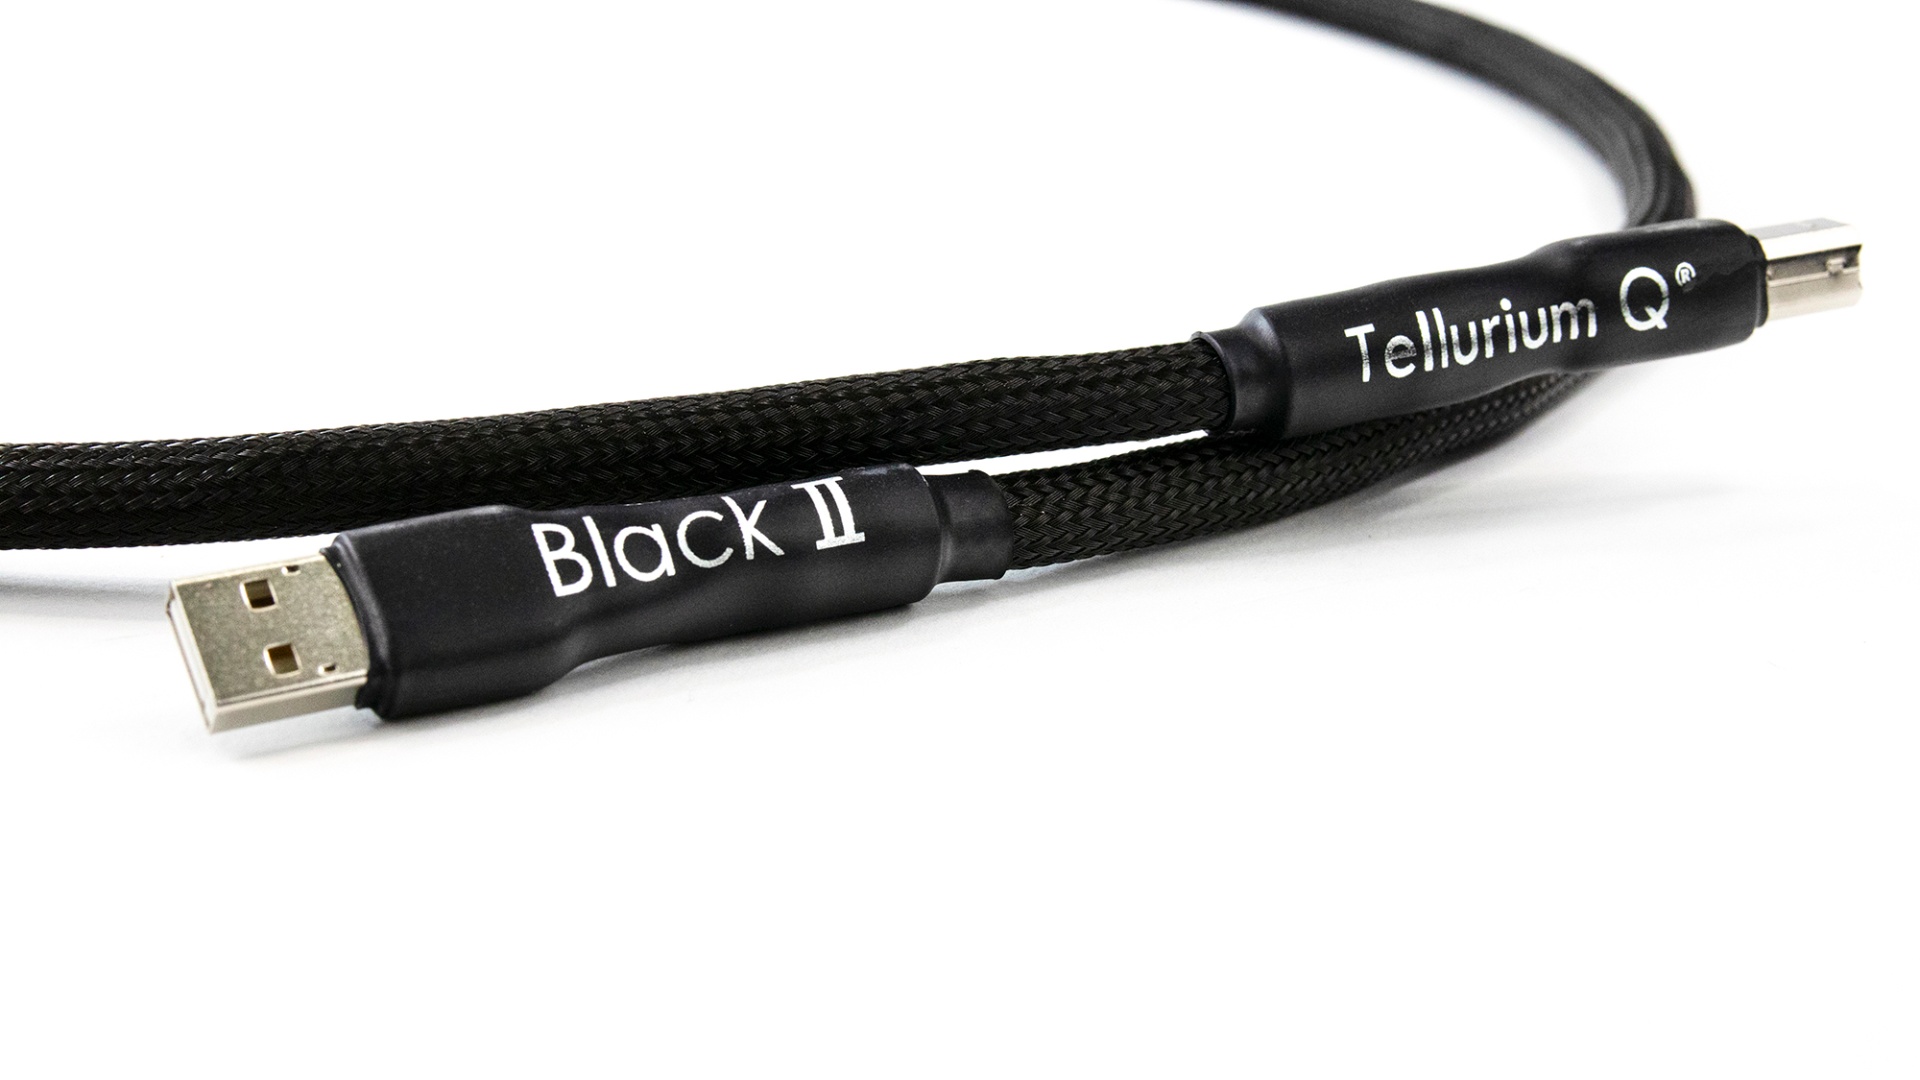 Black Serie von Tellurium Q jetzt komplett in Black II Ausführung